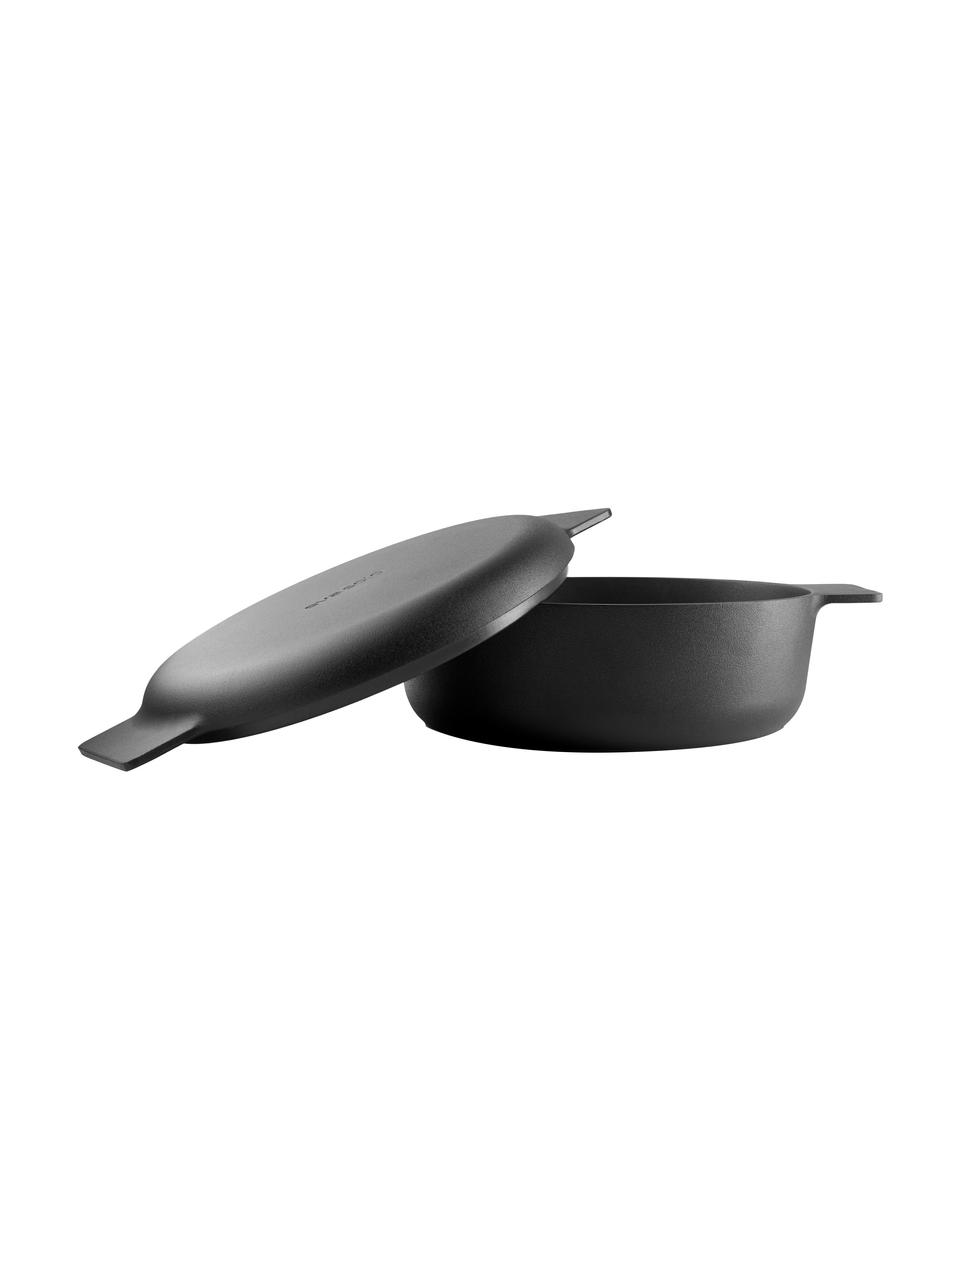 Asador antiadherente Nordic Kitchen, Aluminio con revestimiento antiadherente Slip-Let®, Negro, Ø 25 x Al 11 cm